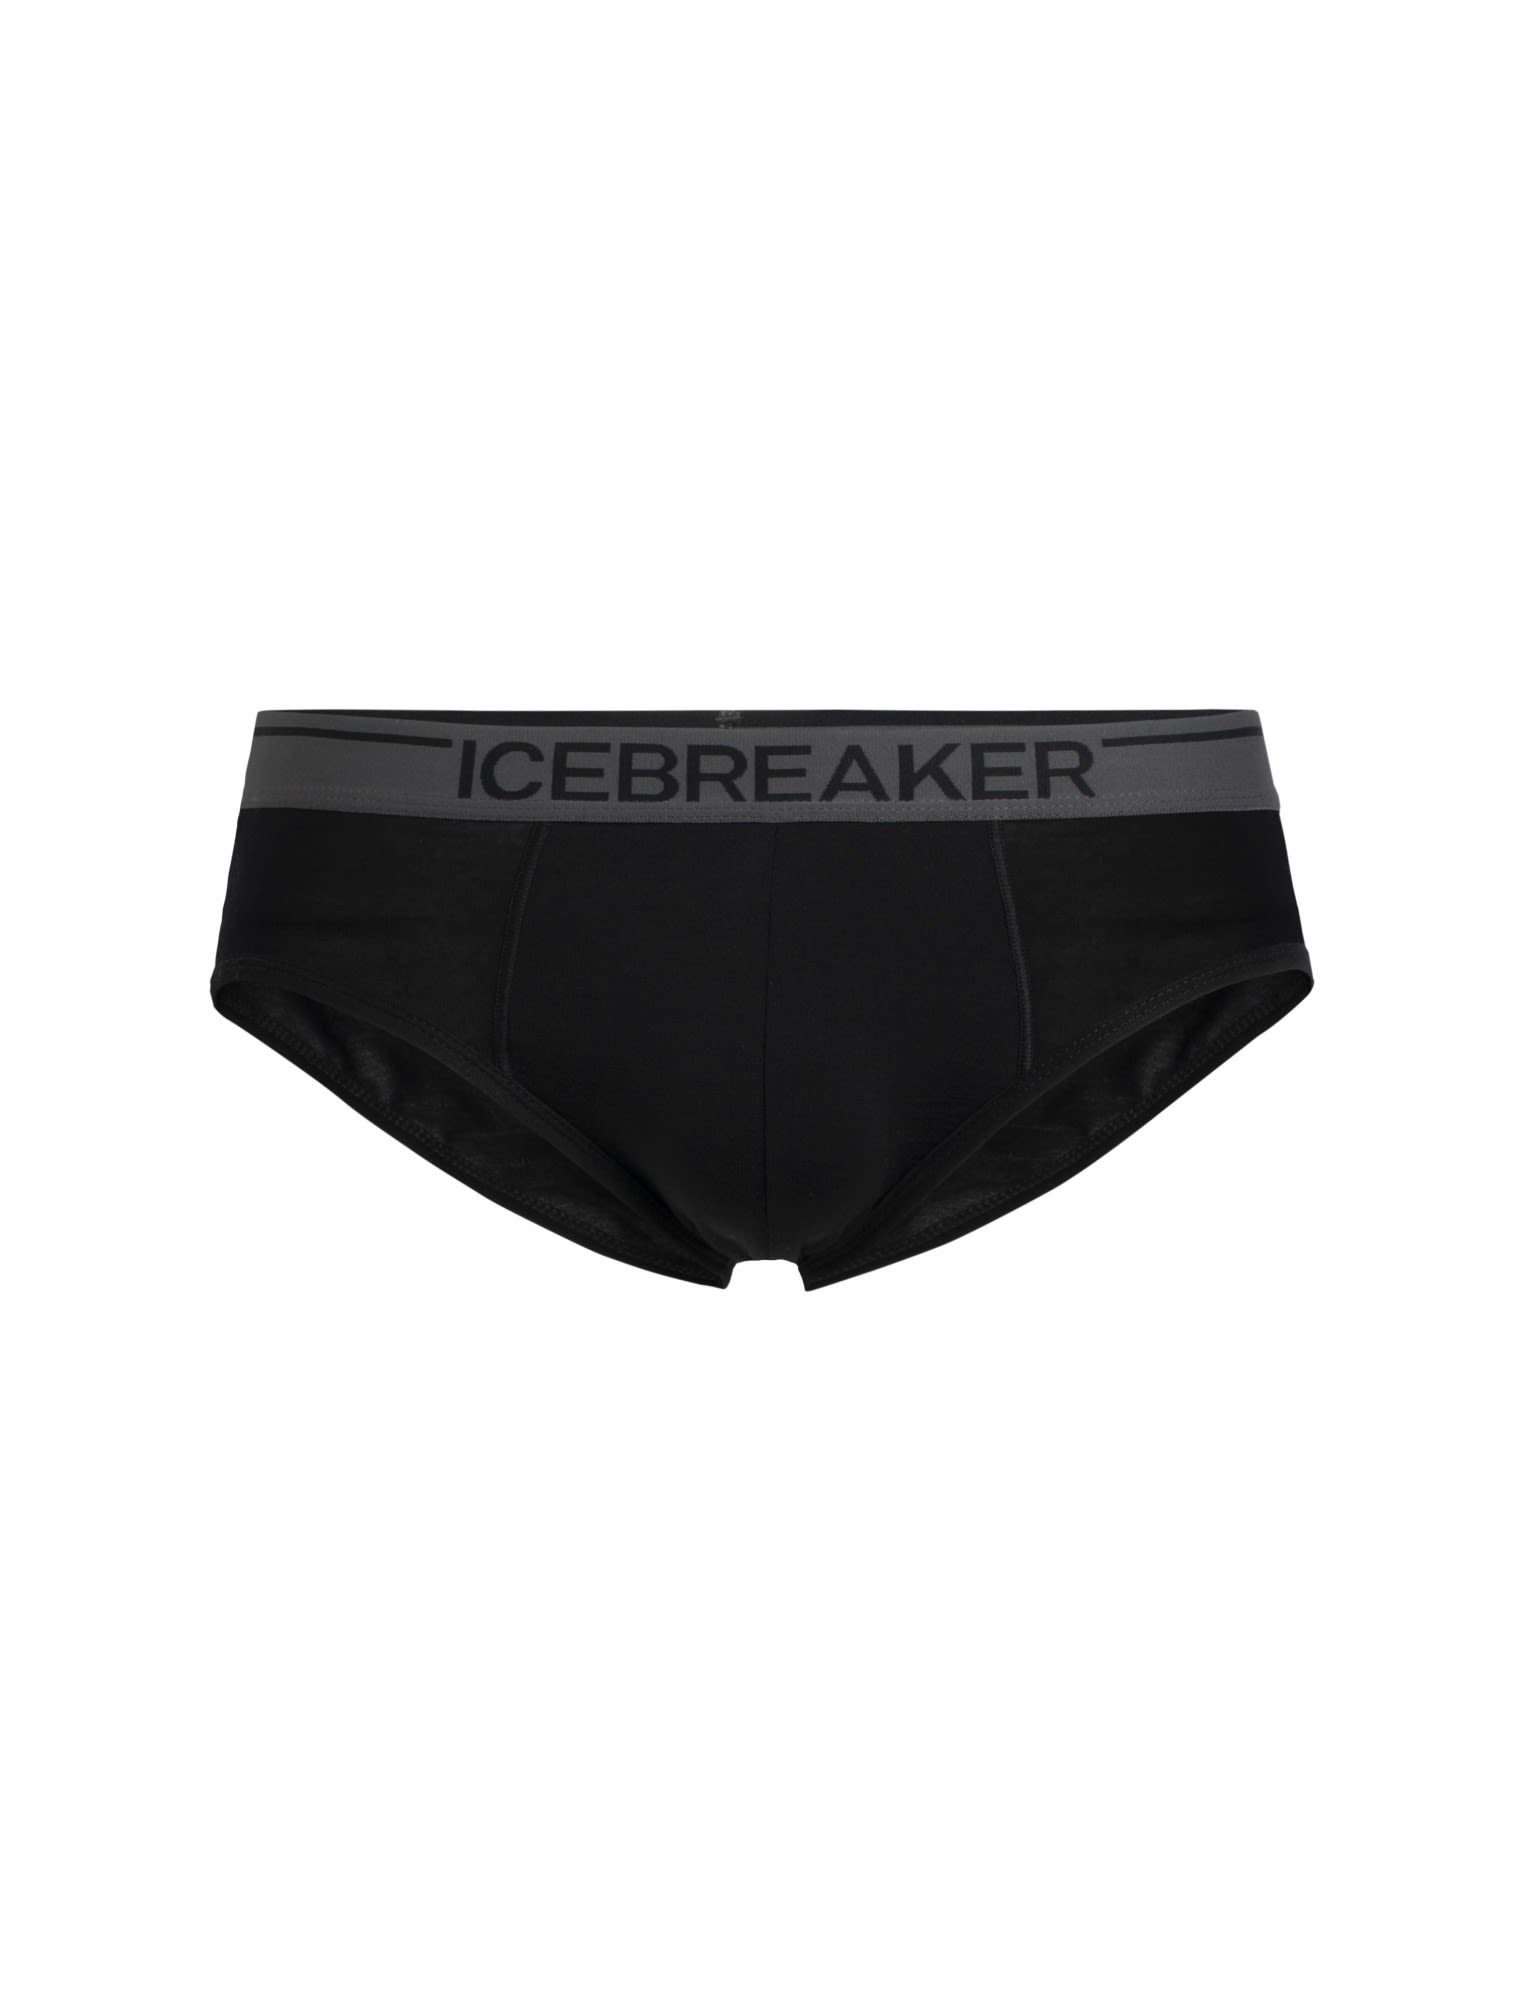 Icebreaker Black Kurze M Anatomica Briefs Lange Herren Icebreaker Unterhose